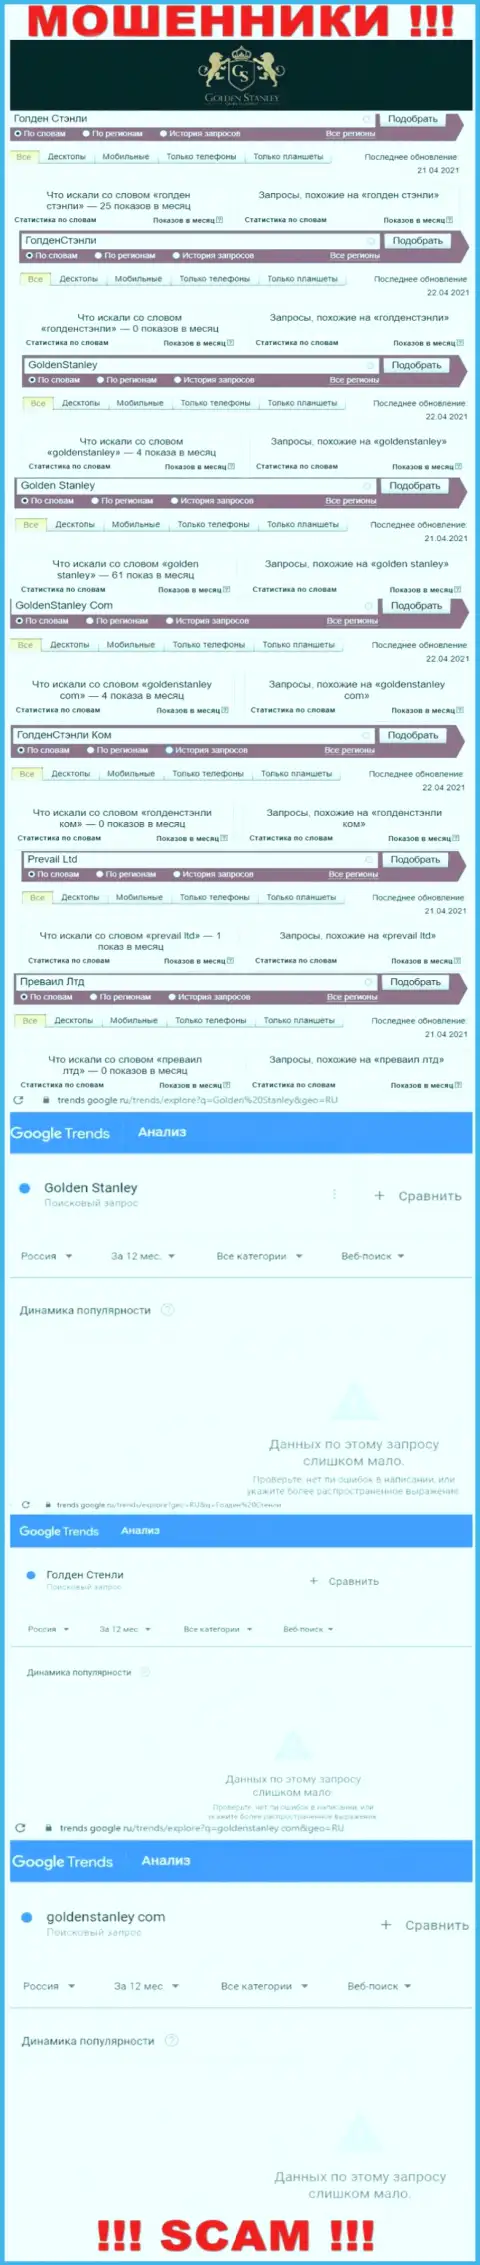 Статистика online-запросов в поисковиках всемирной сети относительно обманщиков GoldenStanley